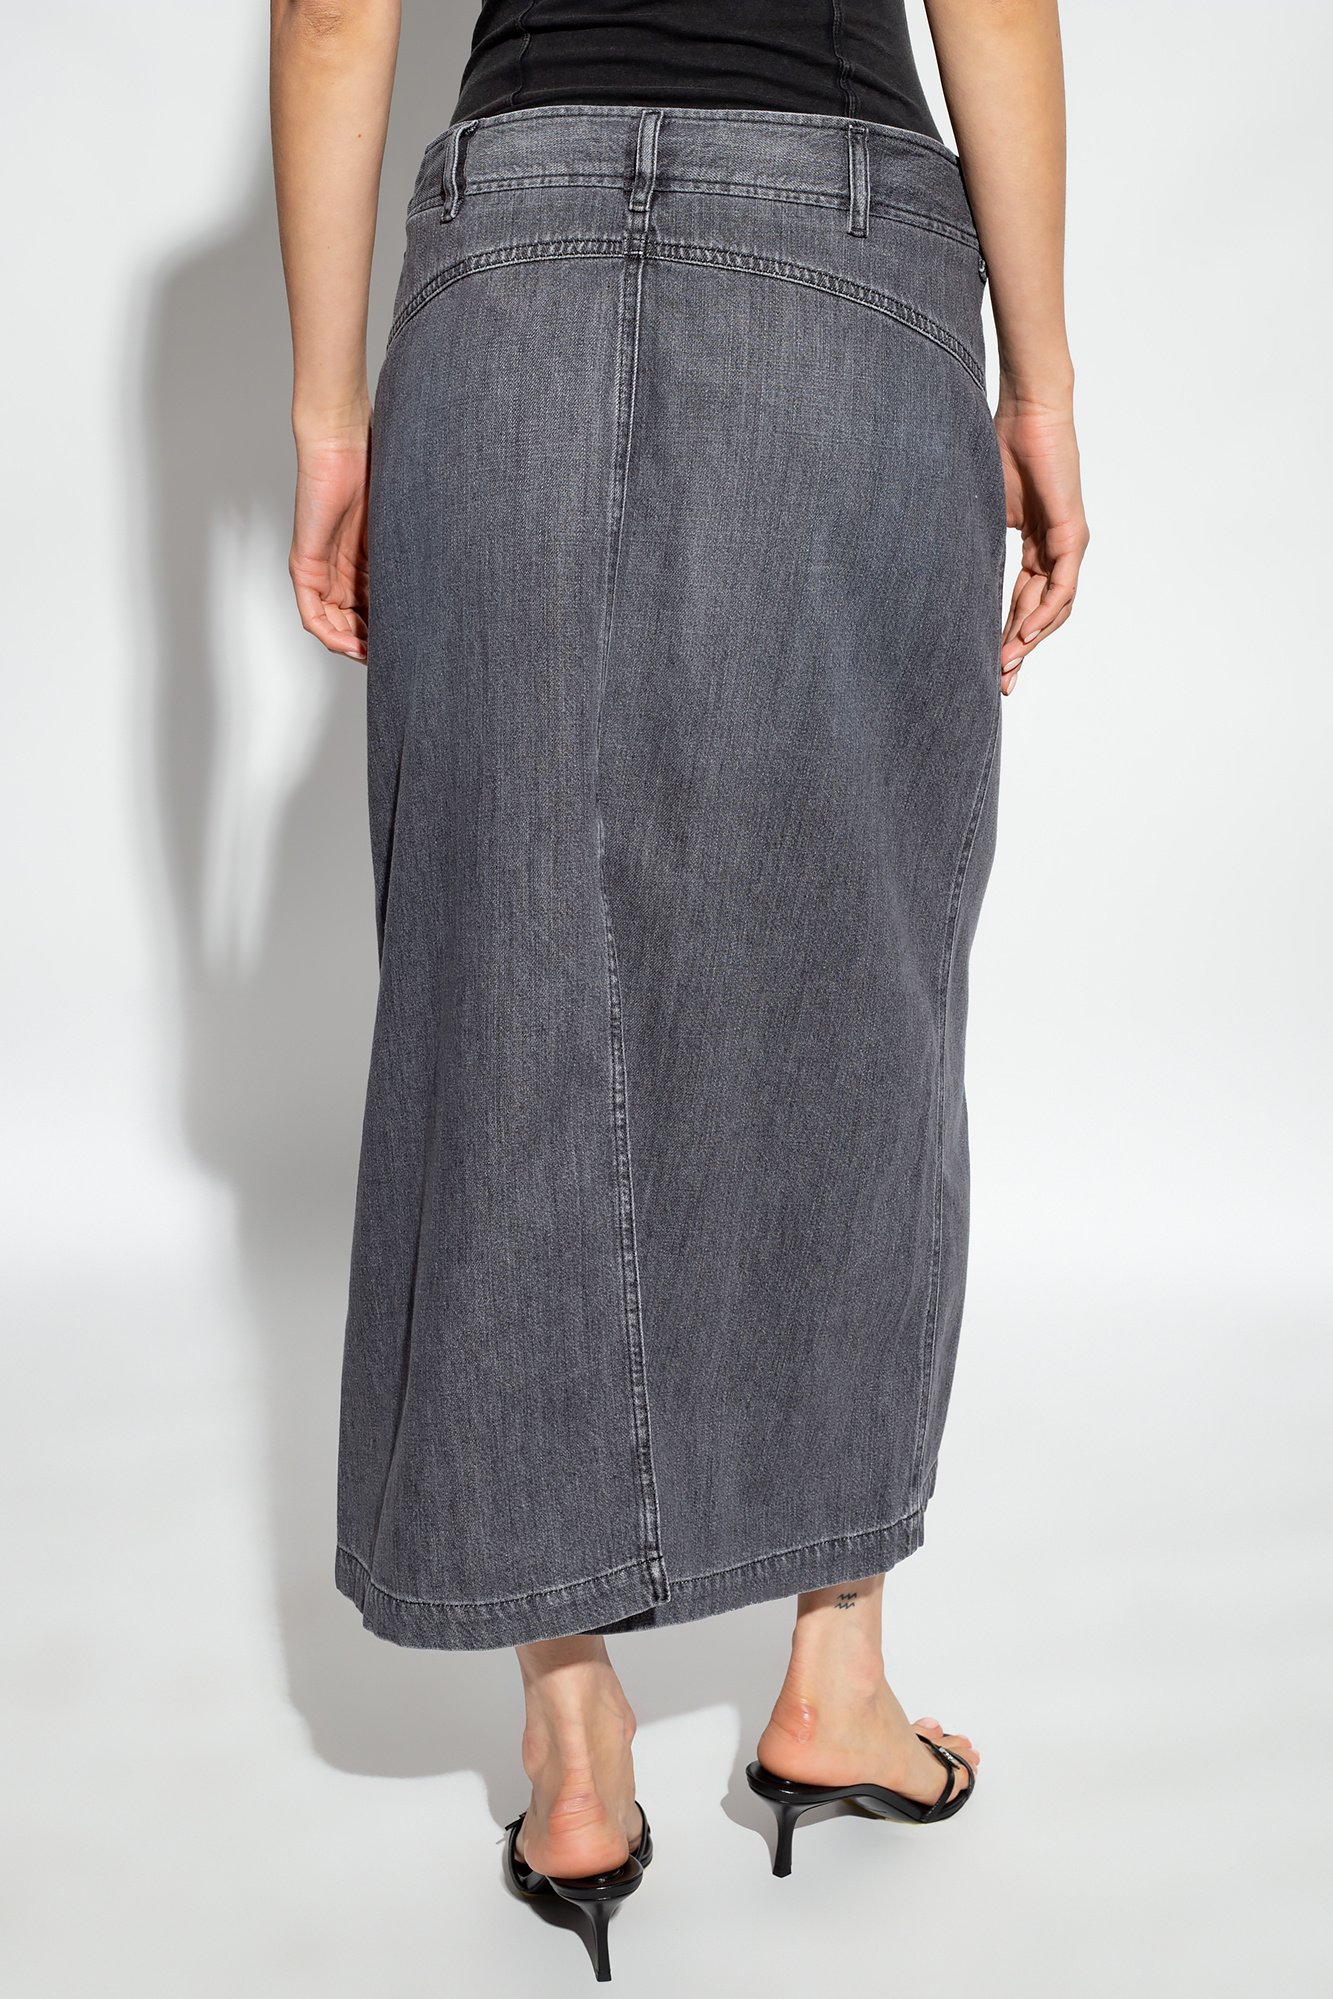 Diesel ‘DE-YINKA’ denim skirt | Women's Clothing | Vitkac